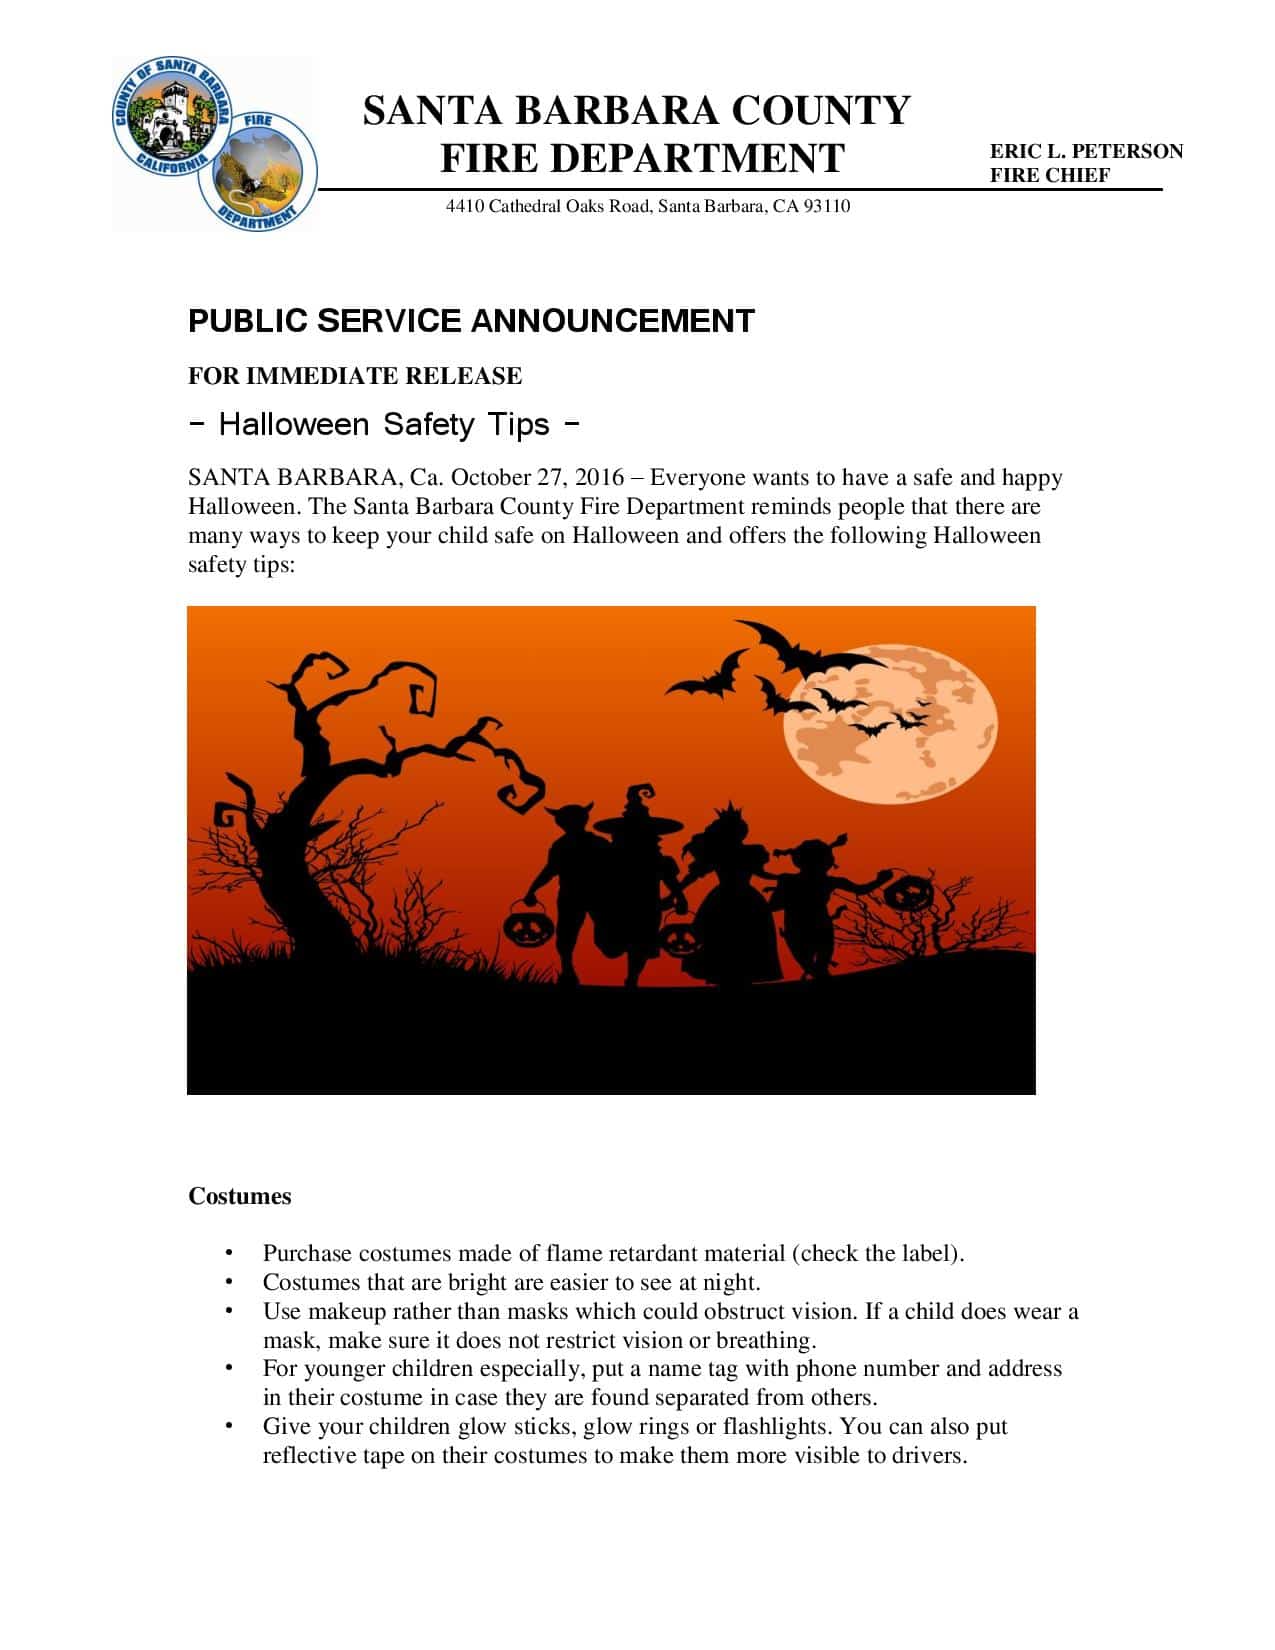 Halloween Safety PSA